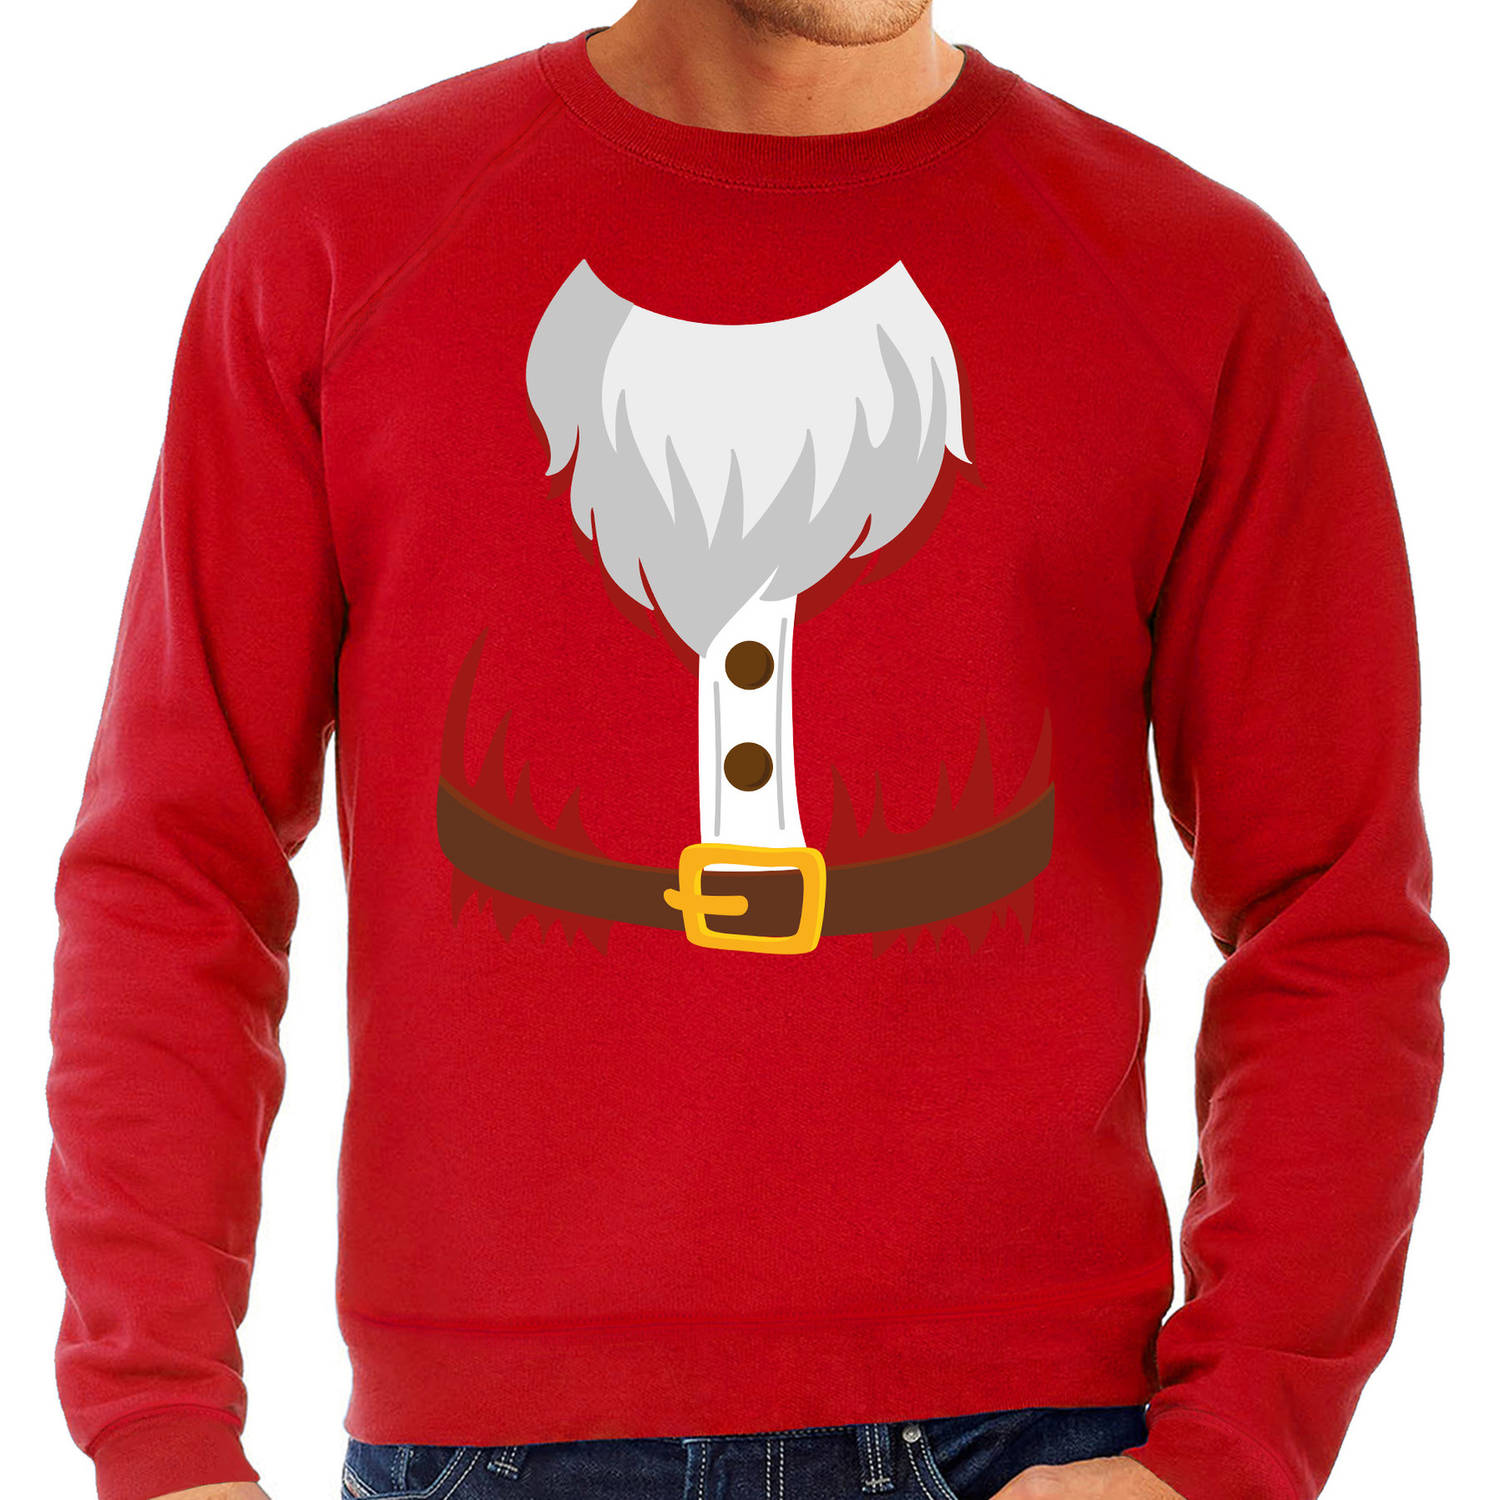 Kerstman kostuum verkleed sweater / trui rood voor heren M - Kerst kostuums